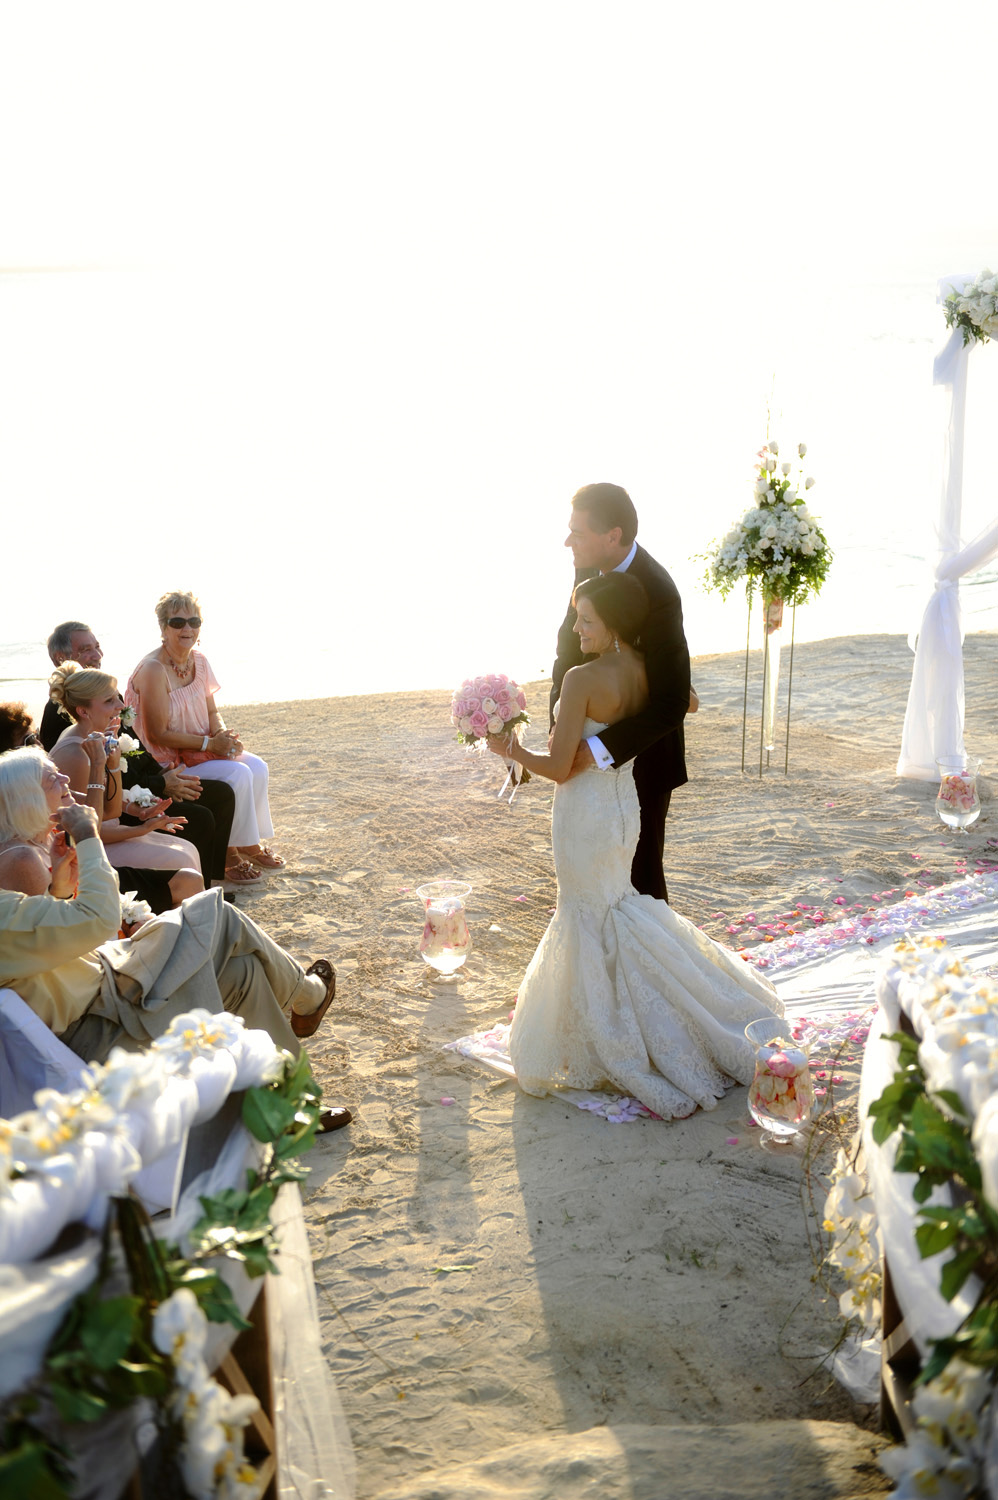 Kathi & Joe's Hochzeit am Strand im Jumby Bay Resort bei Antigua Karibik von Strandhochzeit Hochzeitsfotograf XOANDREA